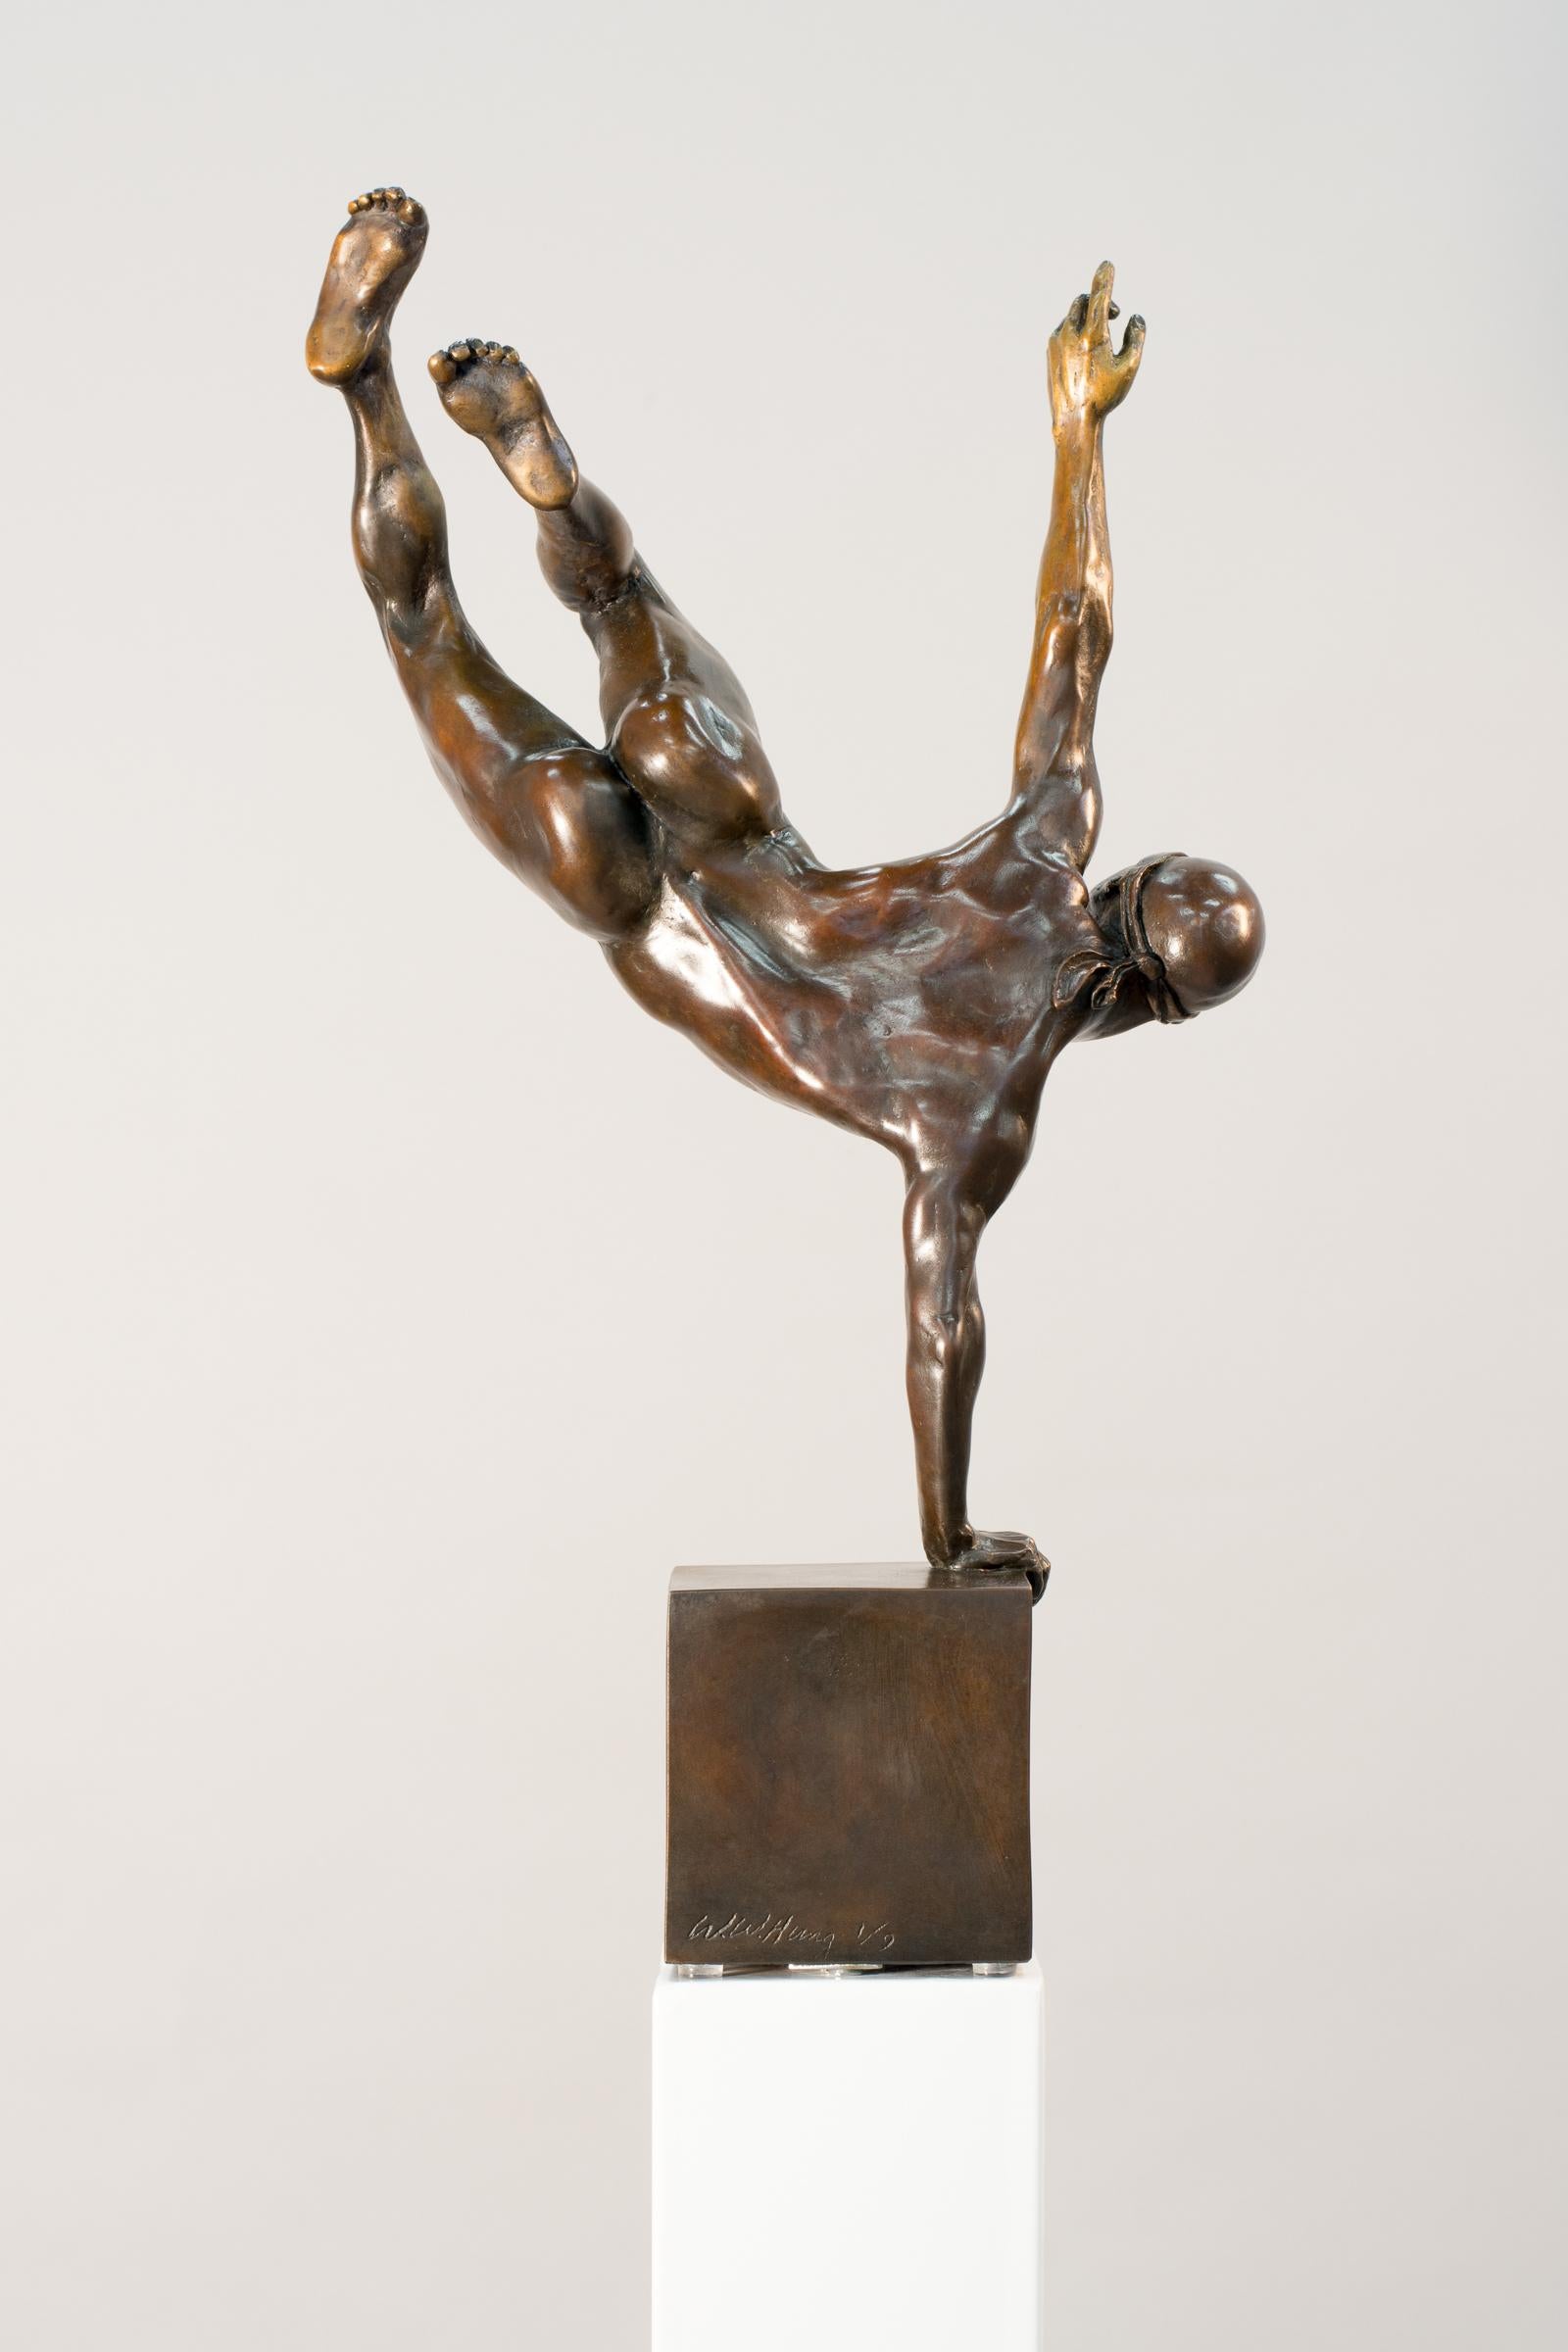 Yearning 1/9 – männlich, nackt, figurativ, statuette, Bronzeskulptur – Sculpture von W.W. Hung